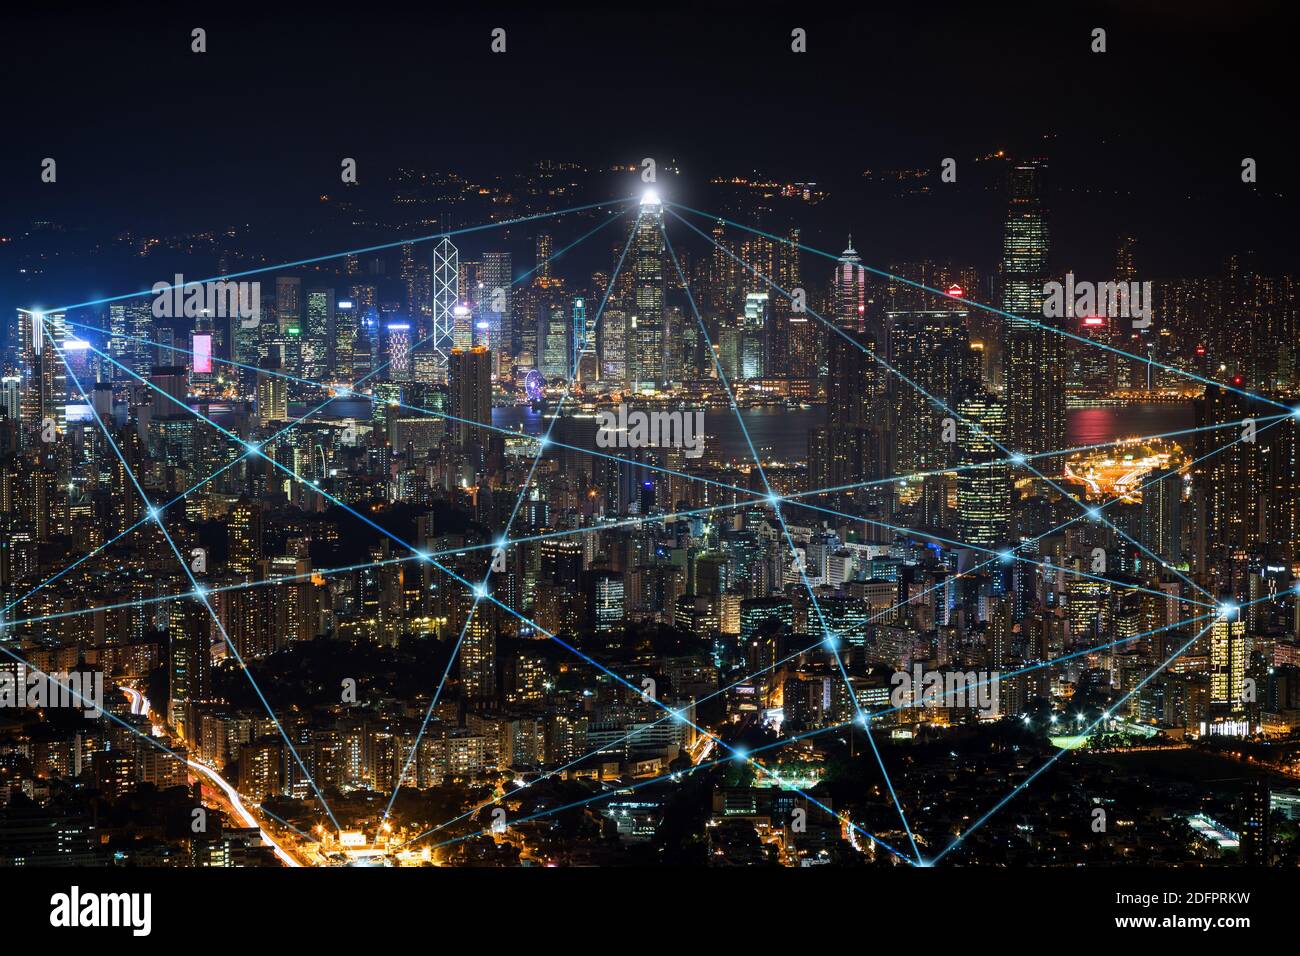 Smart City und Anschlussleitungen. Stadtbild von Hongkong, China, bei Nacht. Technologie, Netzanbindung, Information und Smart City Konzept. Stockfoto